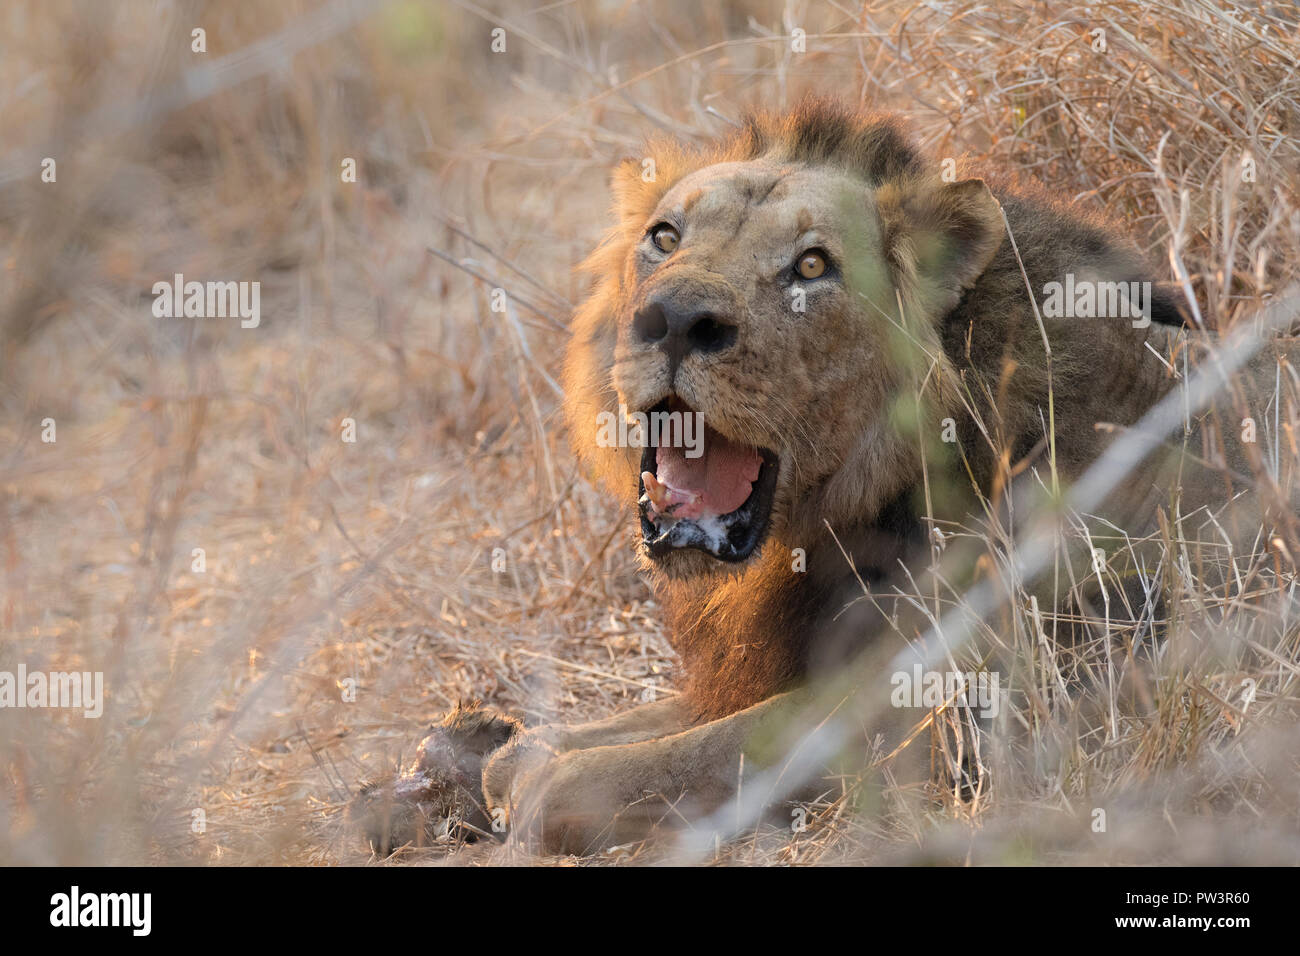 L'AFRICAN LION (Panthera leo) blessé ayant perdu une patte dans un braconnier snare, Gorongosa National Park, au Mozambique. Les espèces vulnérables. Banque D'Images